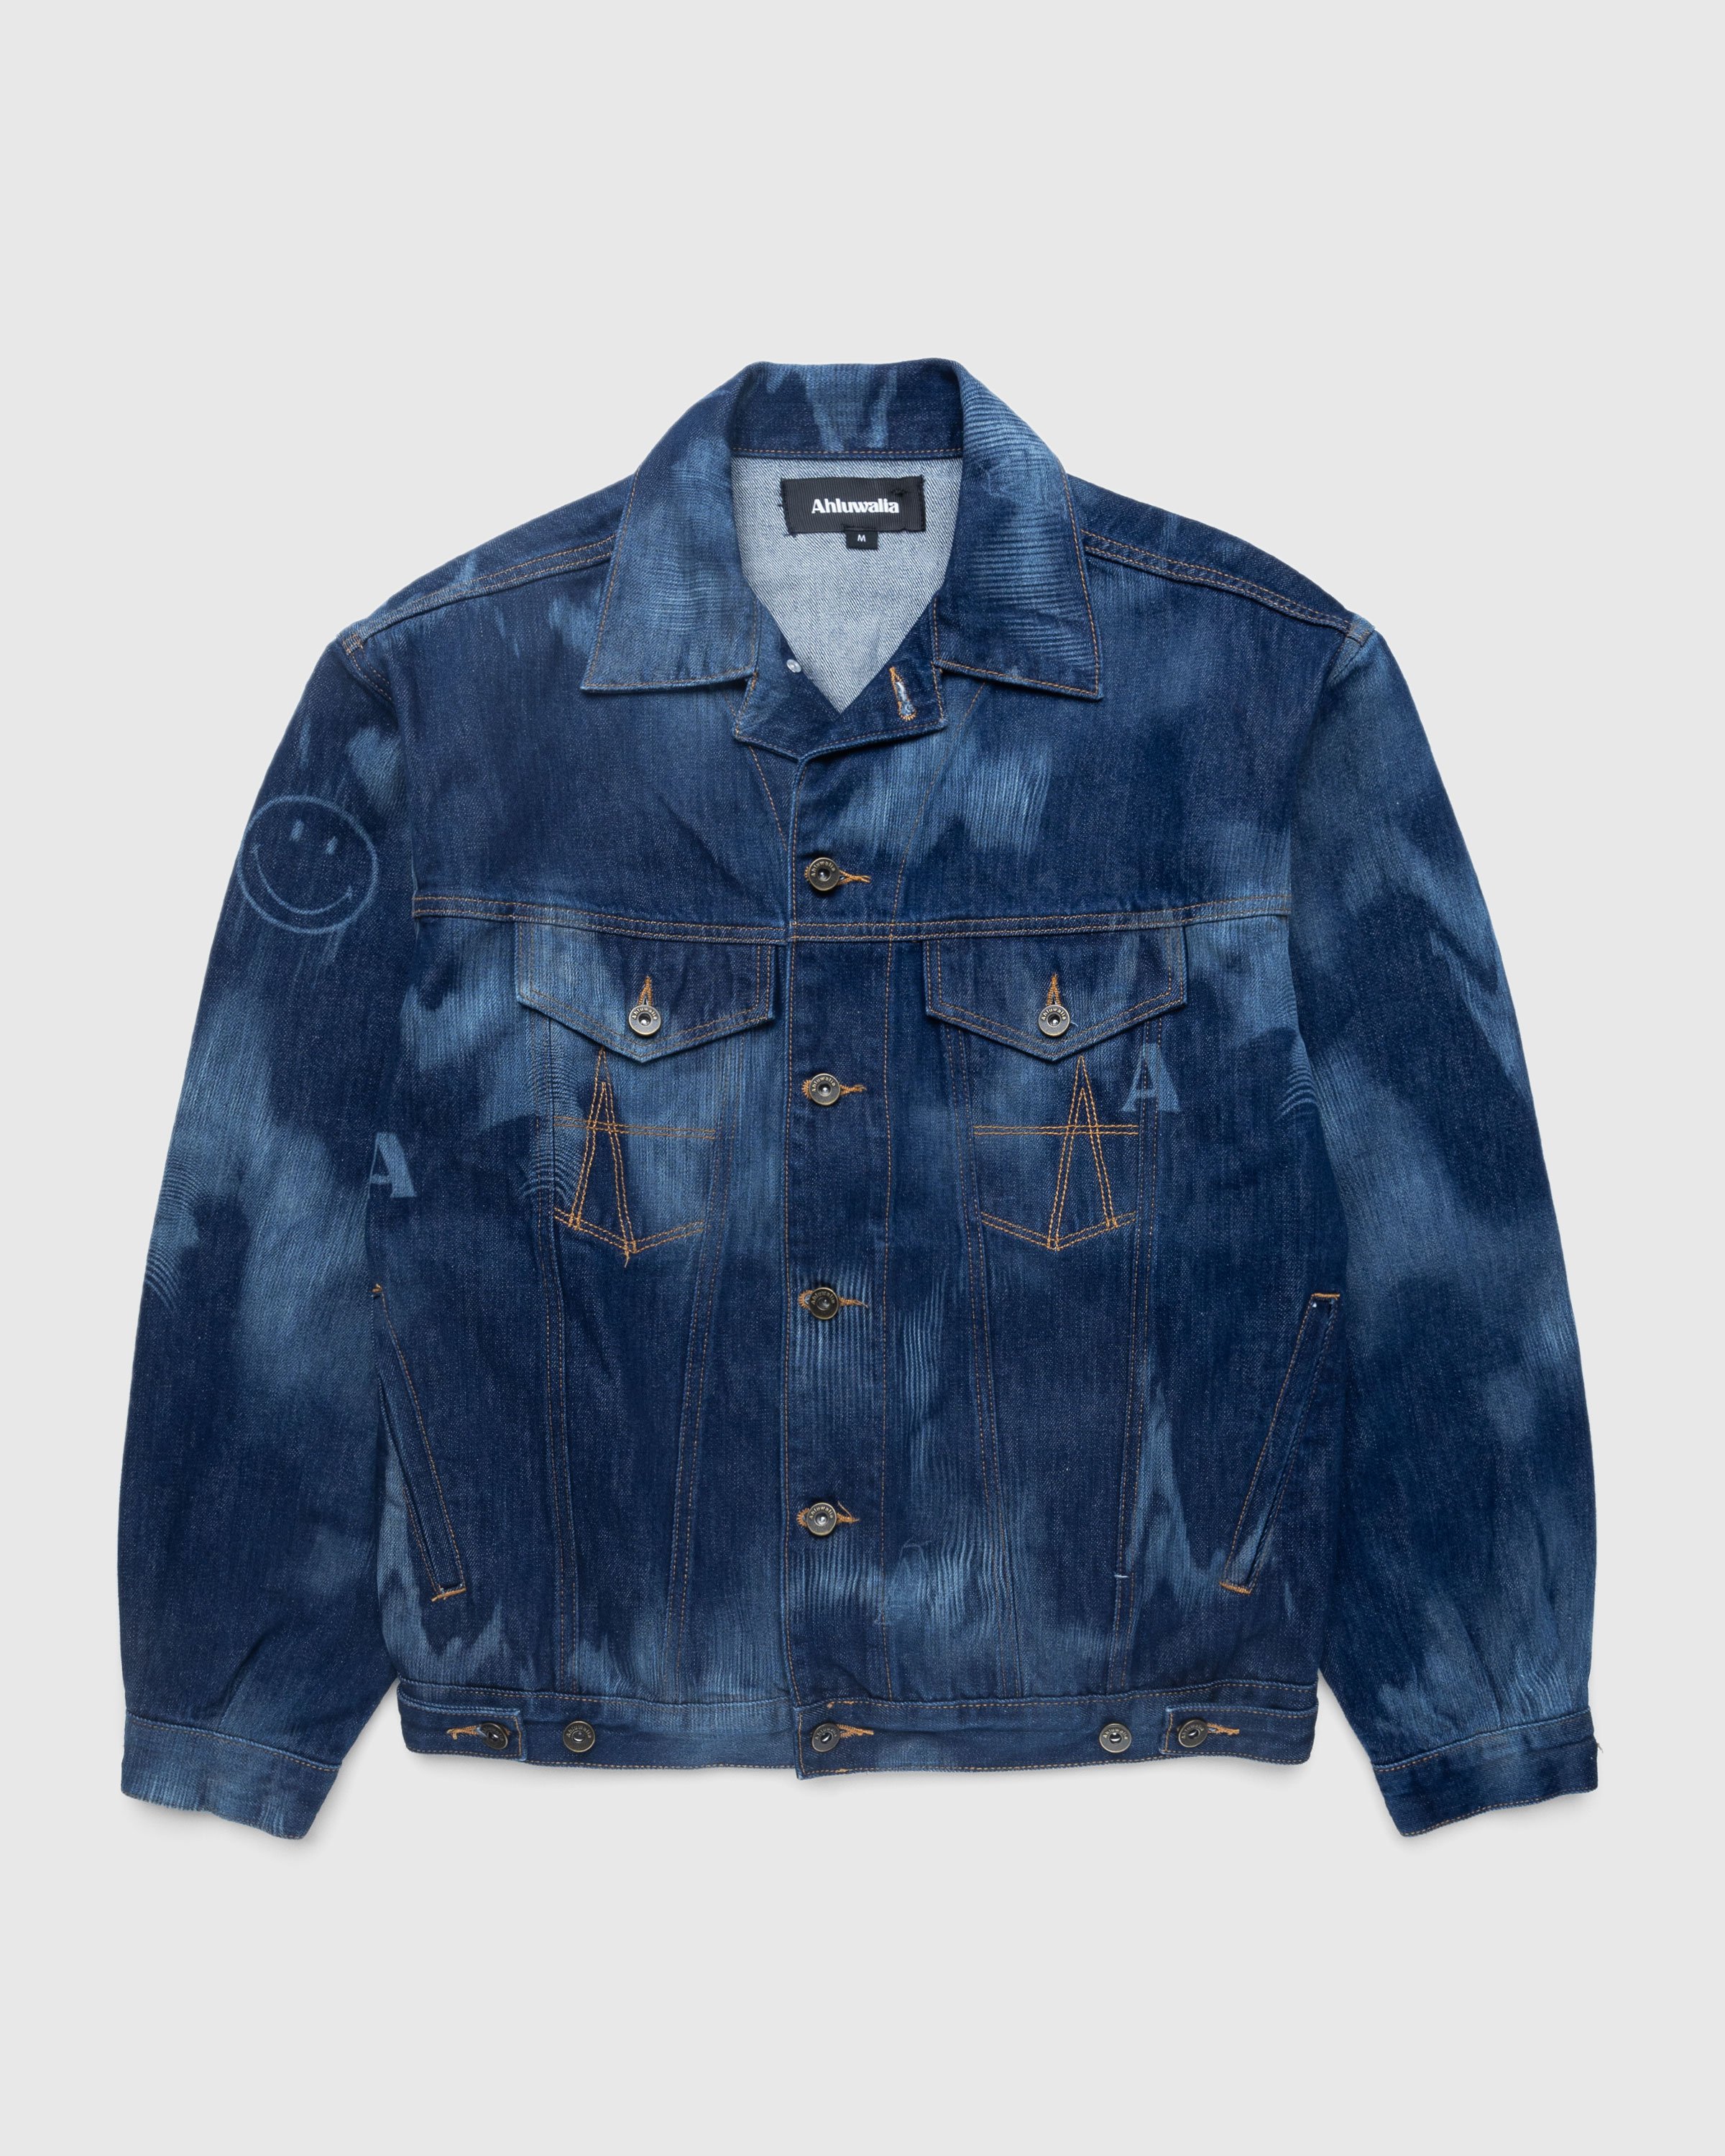 Ahluwalia - Signature Denim Jacket Indigo - Clothing - Blue - Image 1